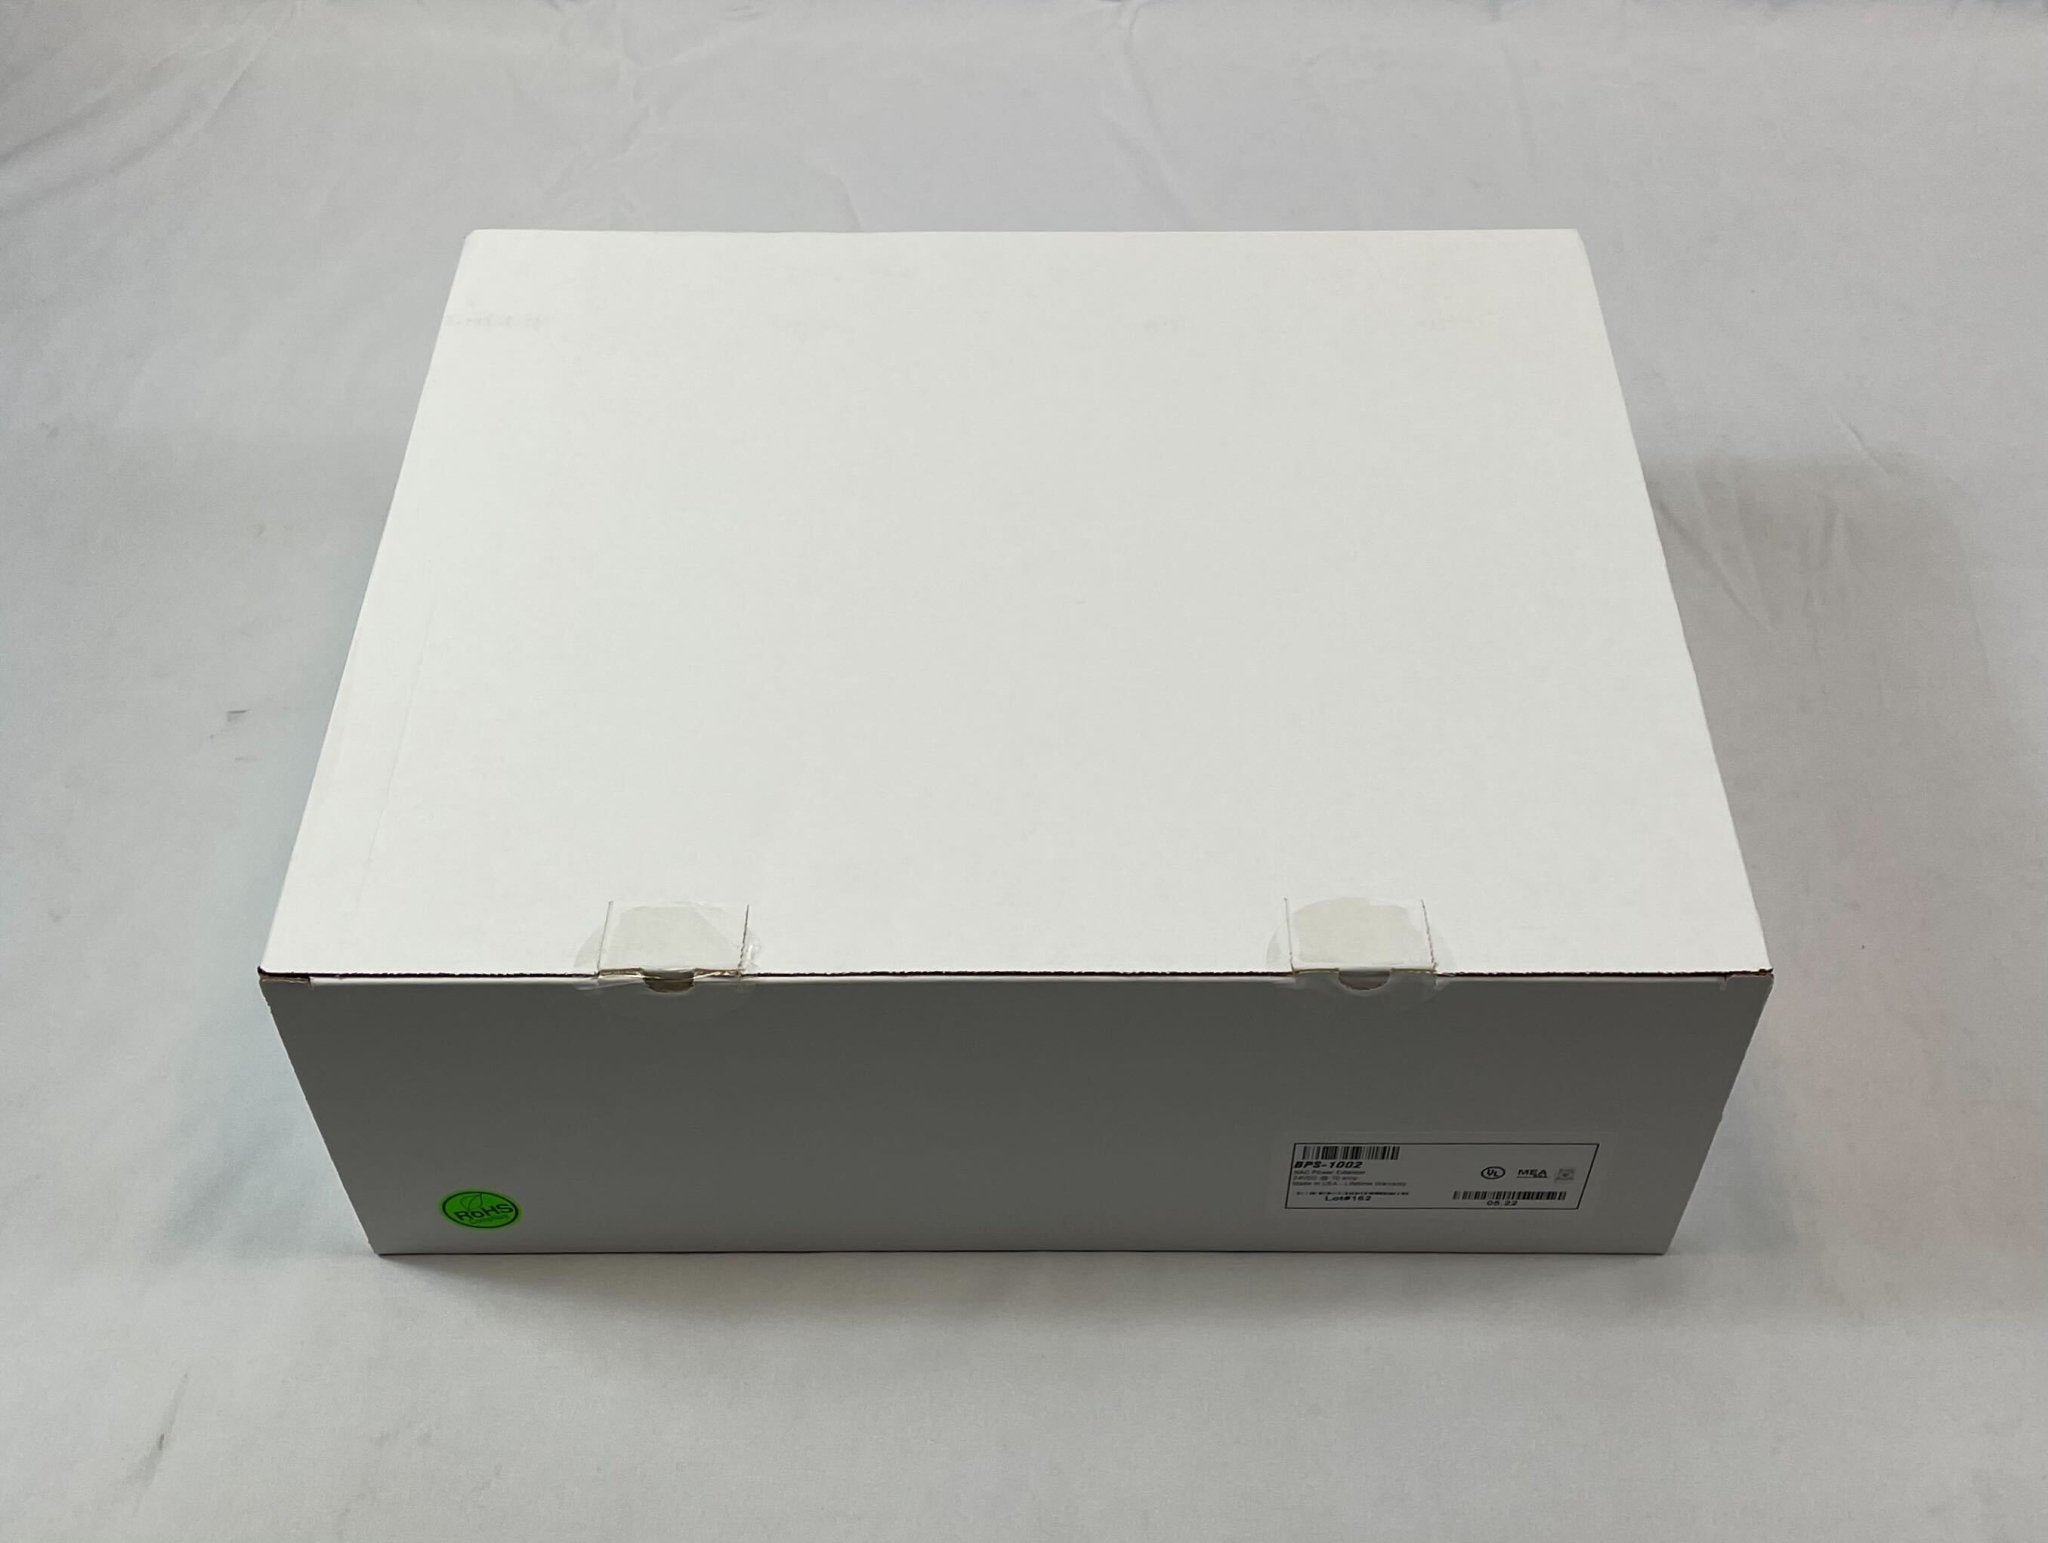 Mircom BPS-1002 NAC Power Extender Input 120VAC - The Fire Alarm Supplier